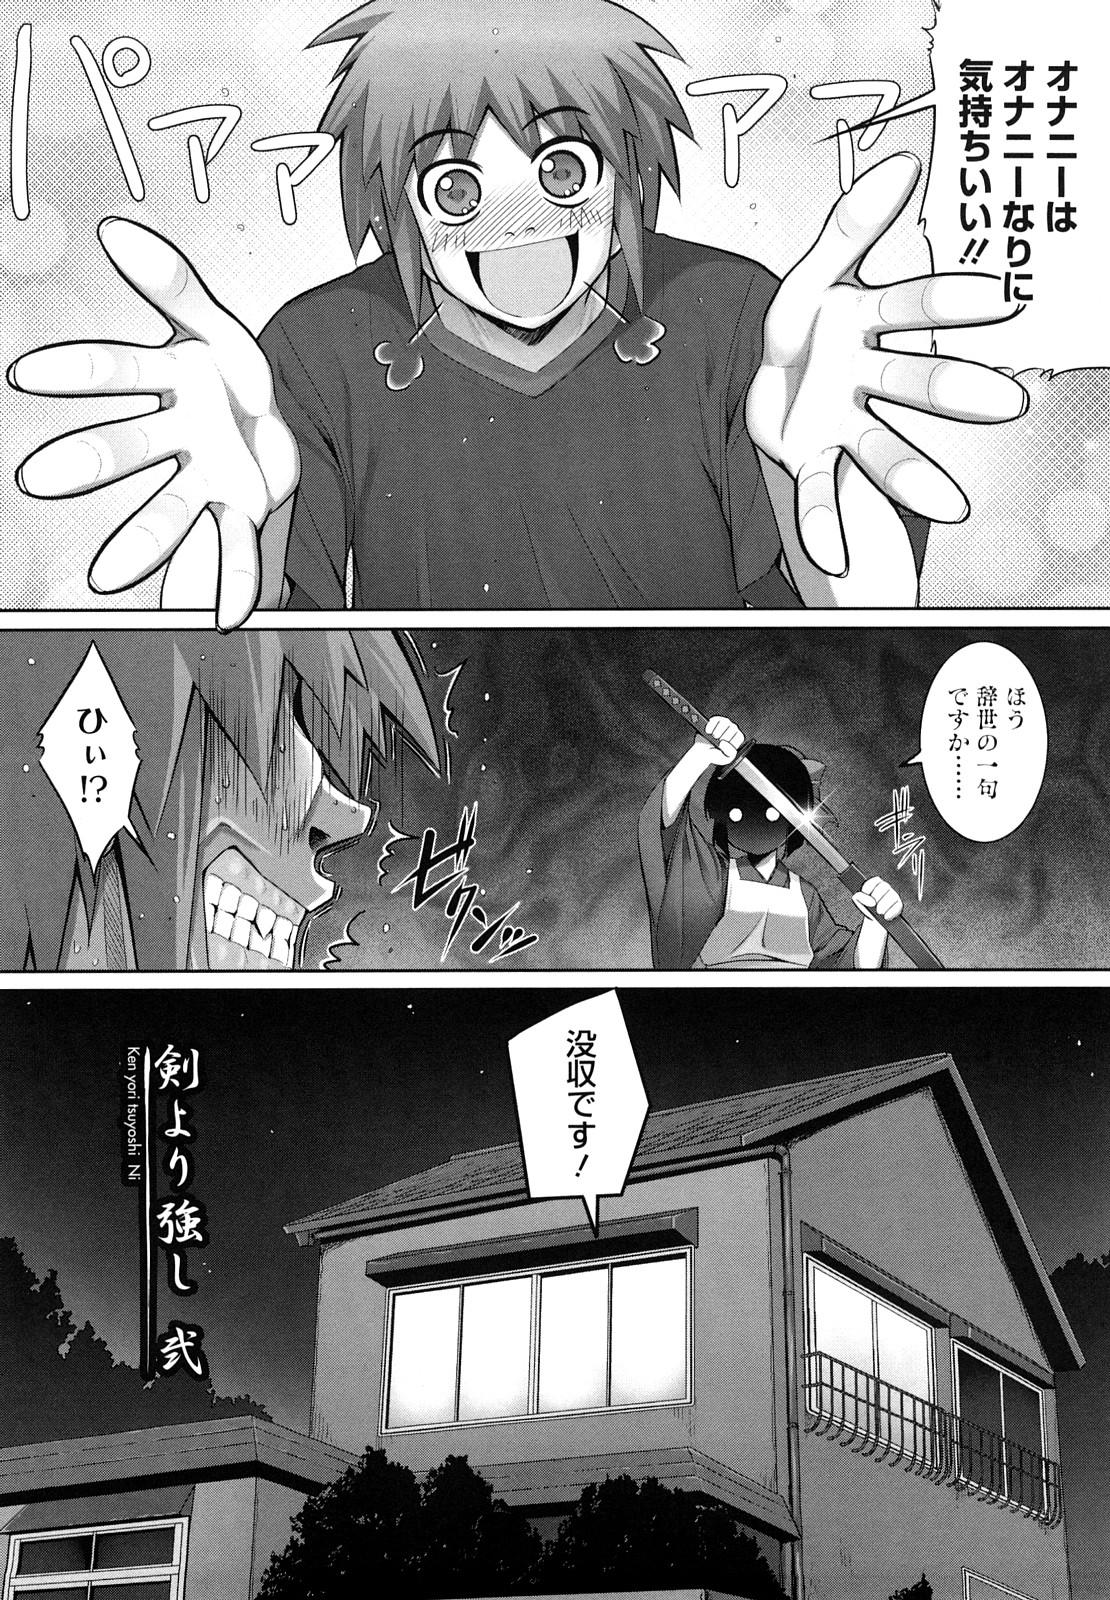 [Namonashi] Ken yori Tsuyoshi - Mightier Than The Sword. page 27 full